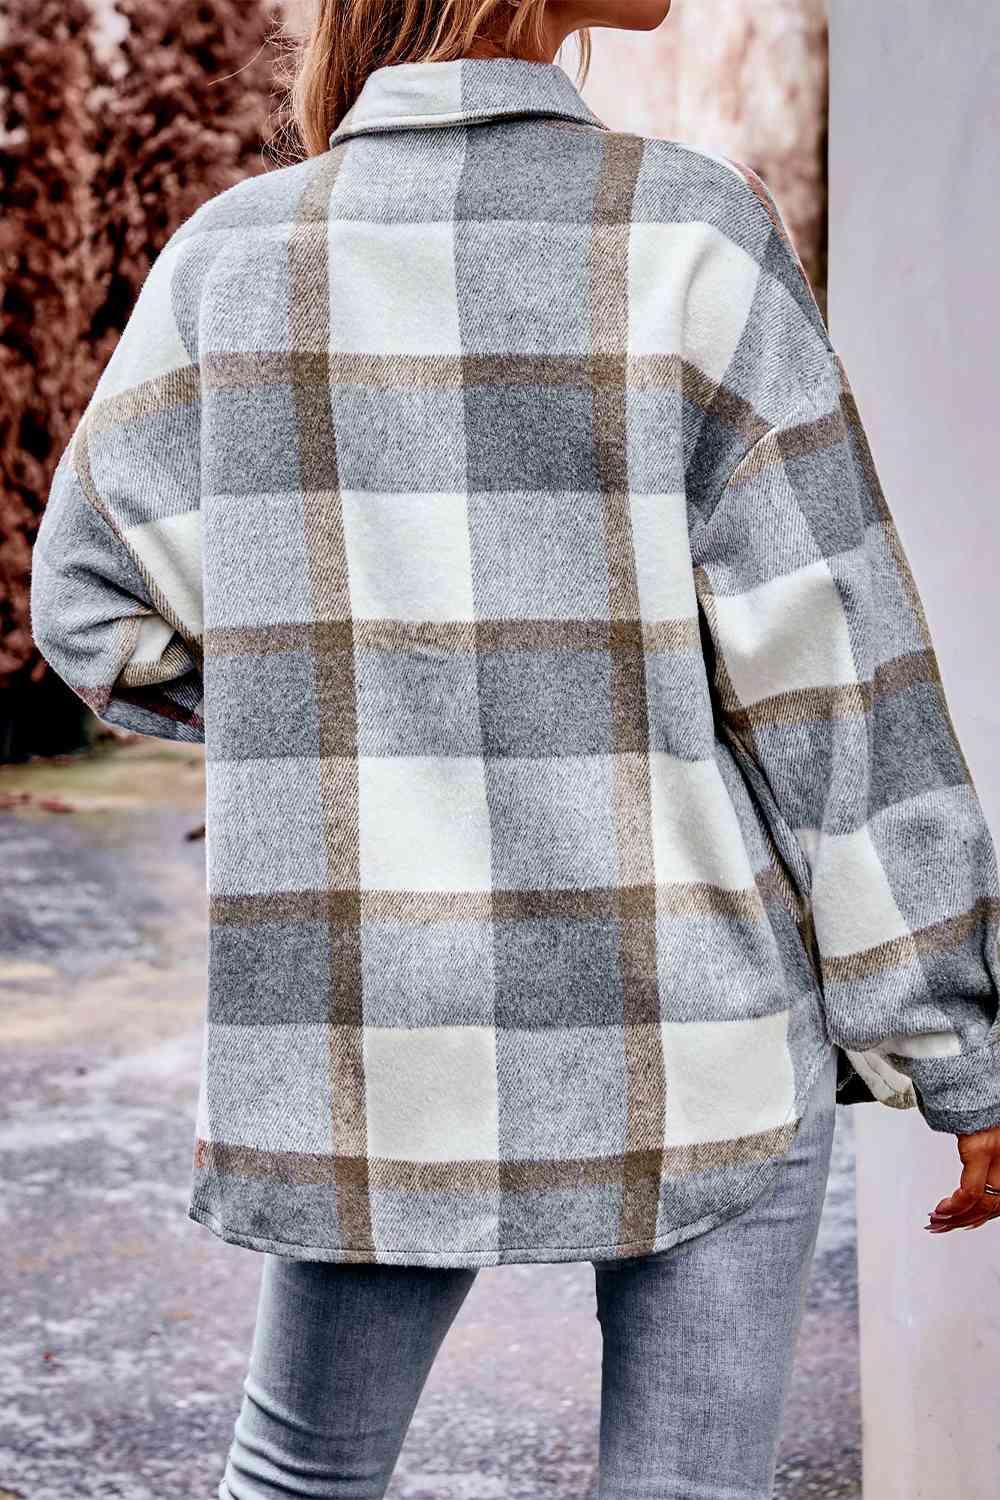 Plaid Long Sleeve Shirt Jacket with Pockets - Bona Fide Fashion